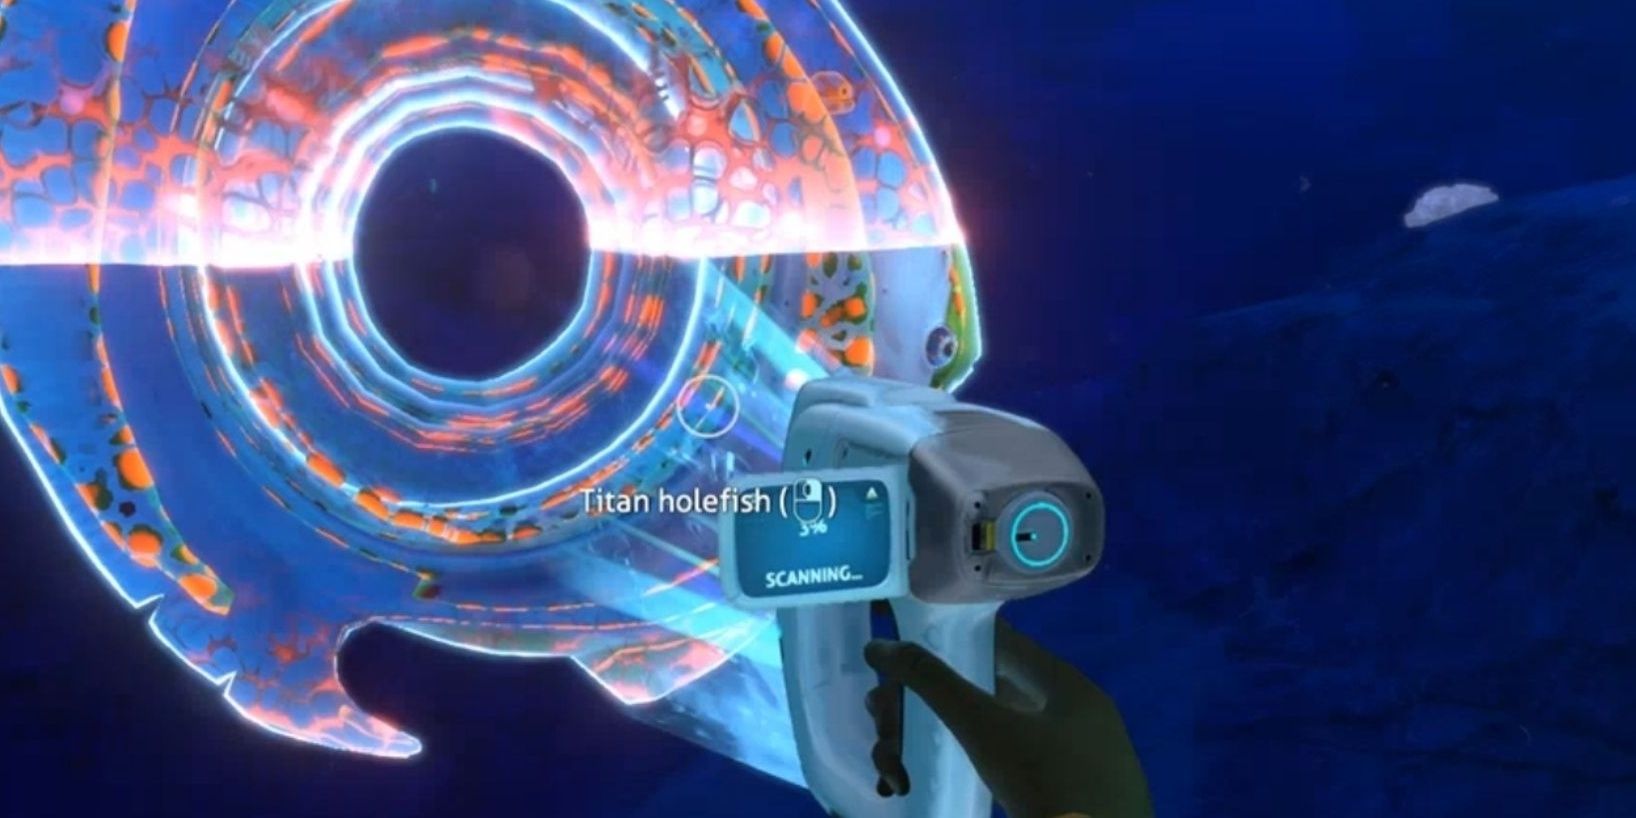 Robin scanning a Titan Hole Fish